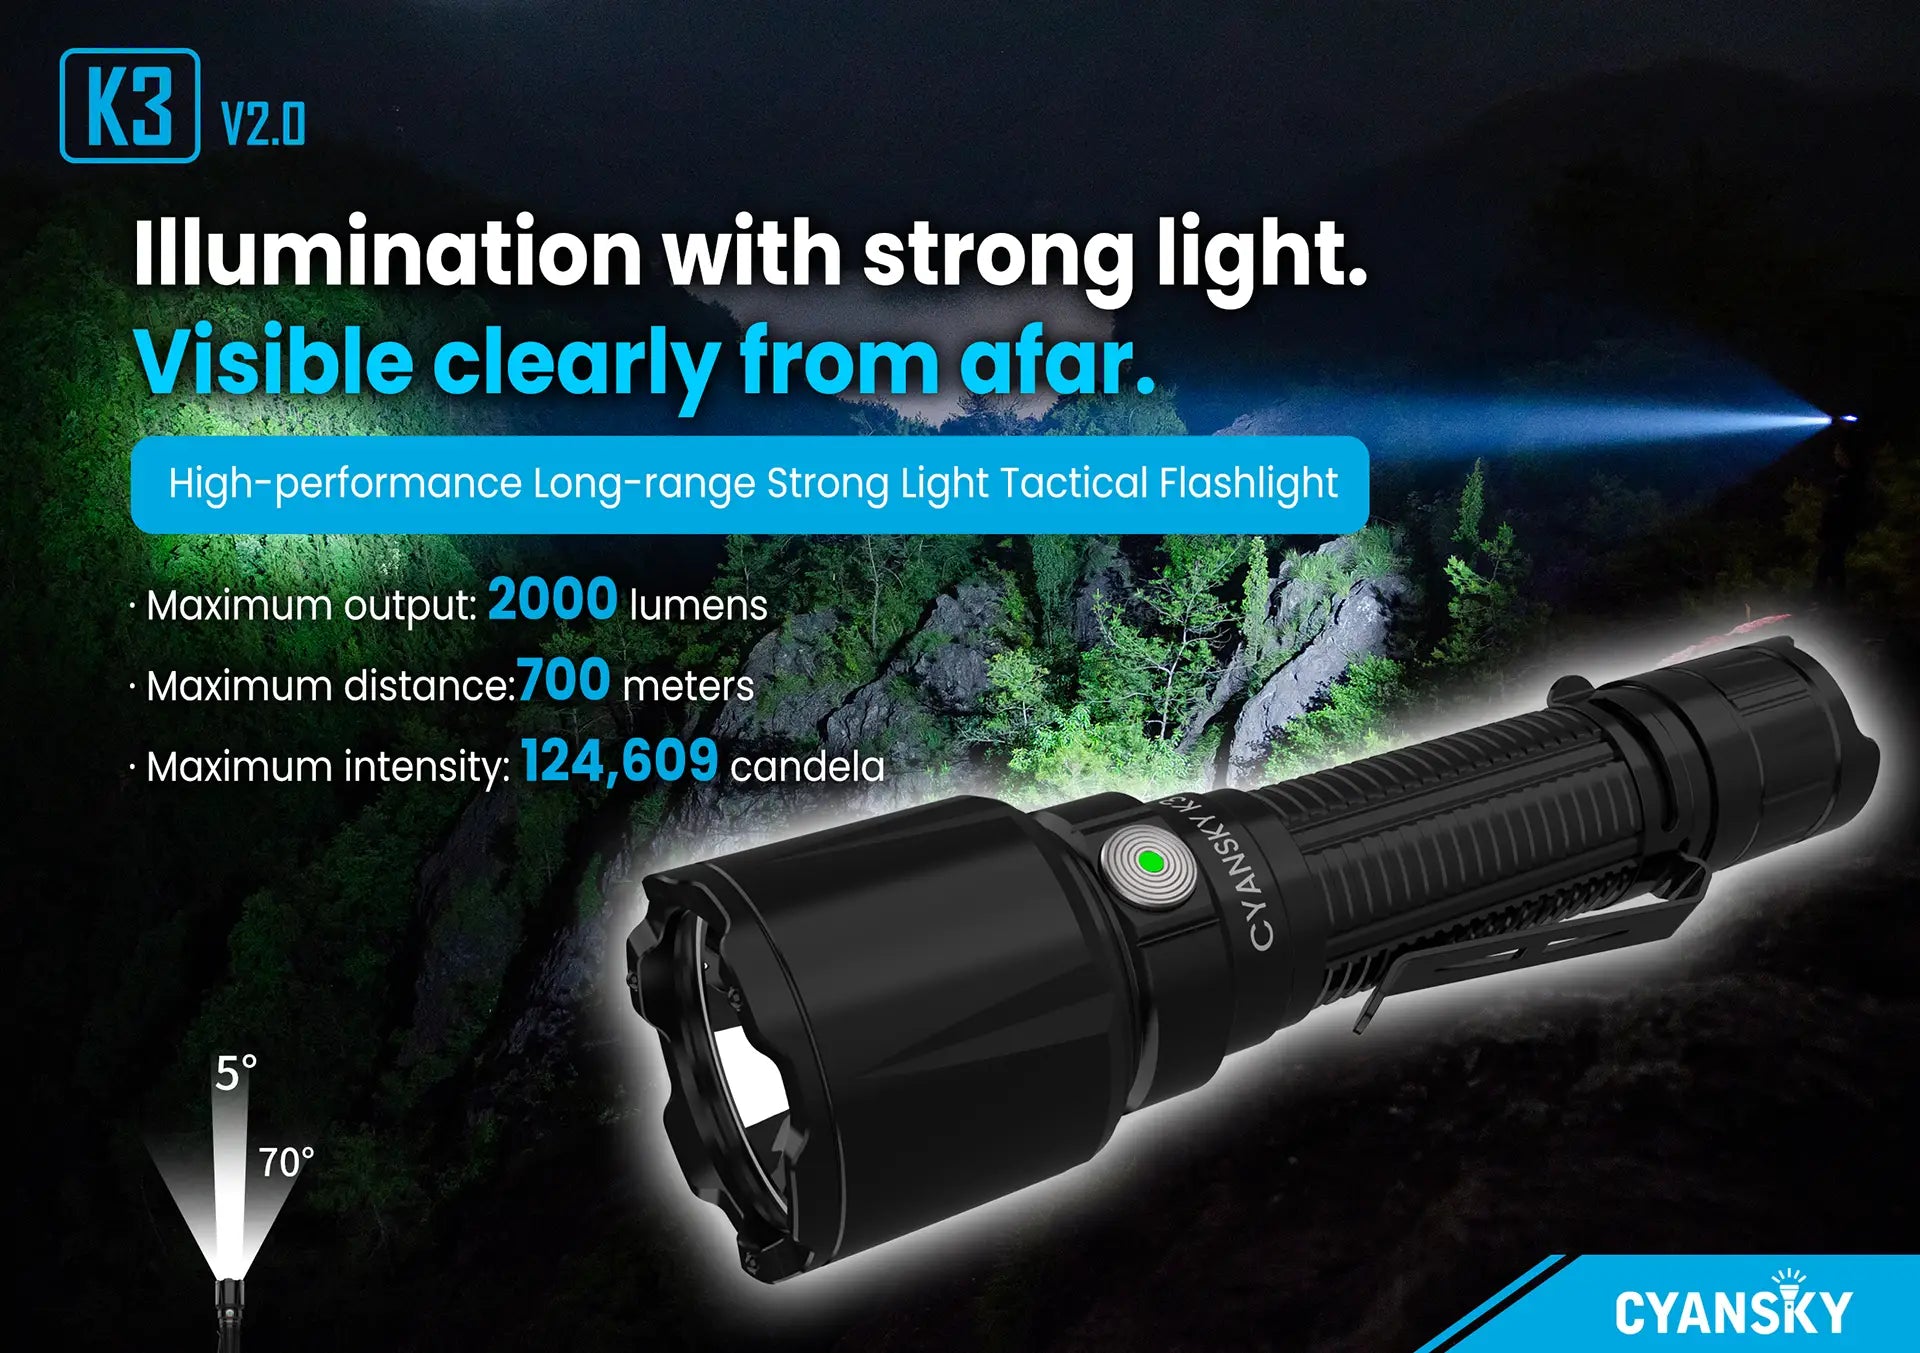 K3 v2.0 Lanterna LED Flashlight Cyansky